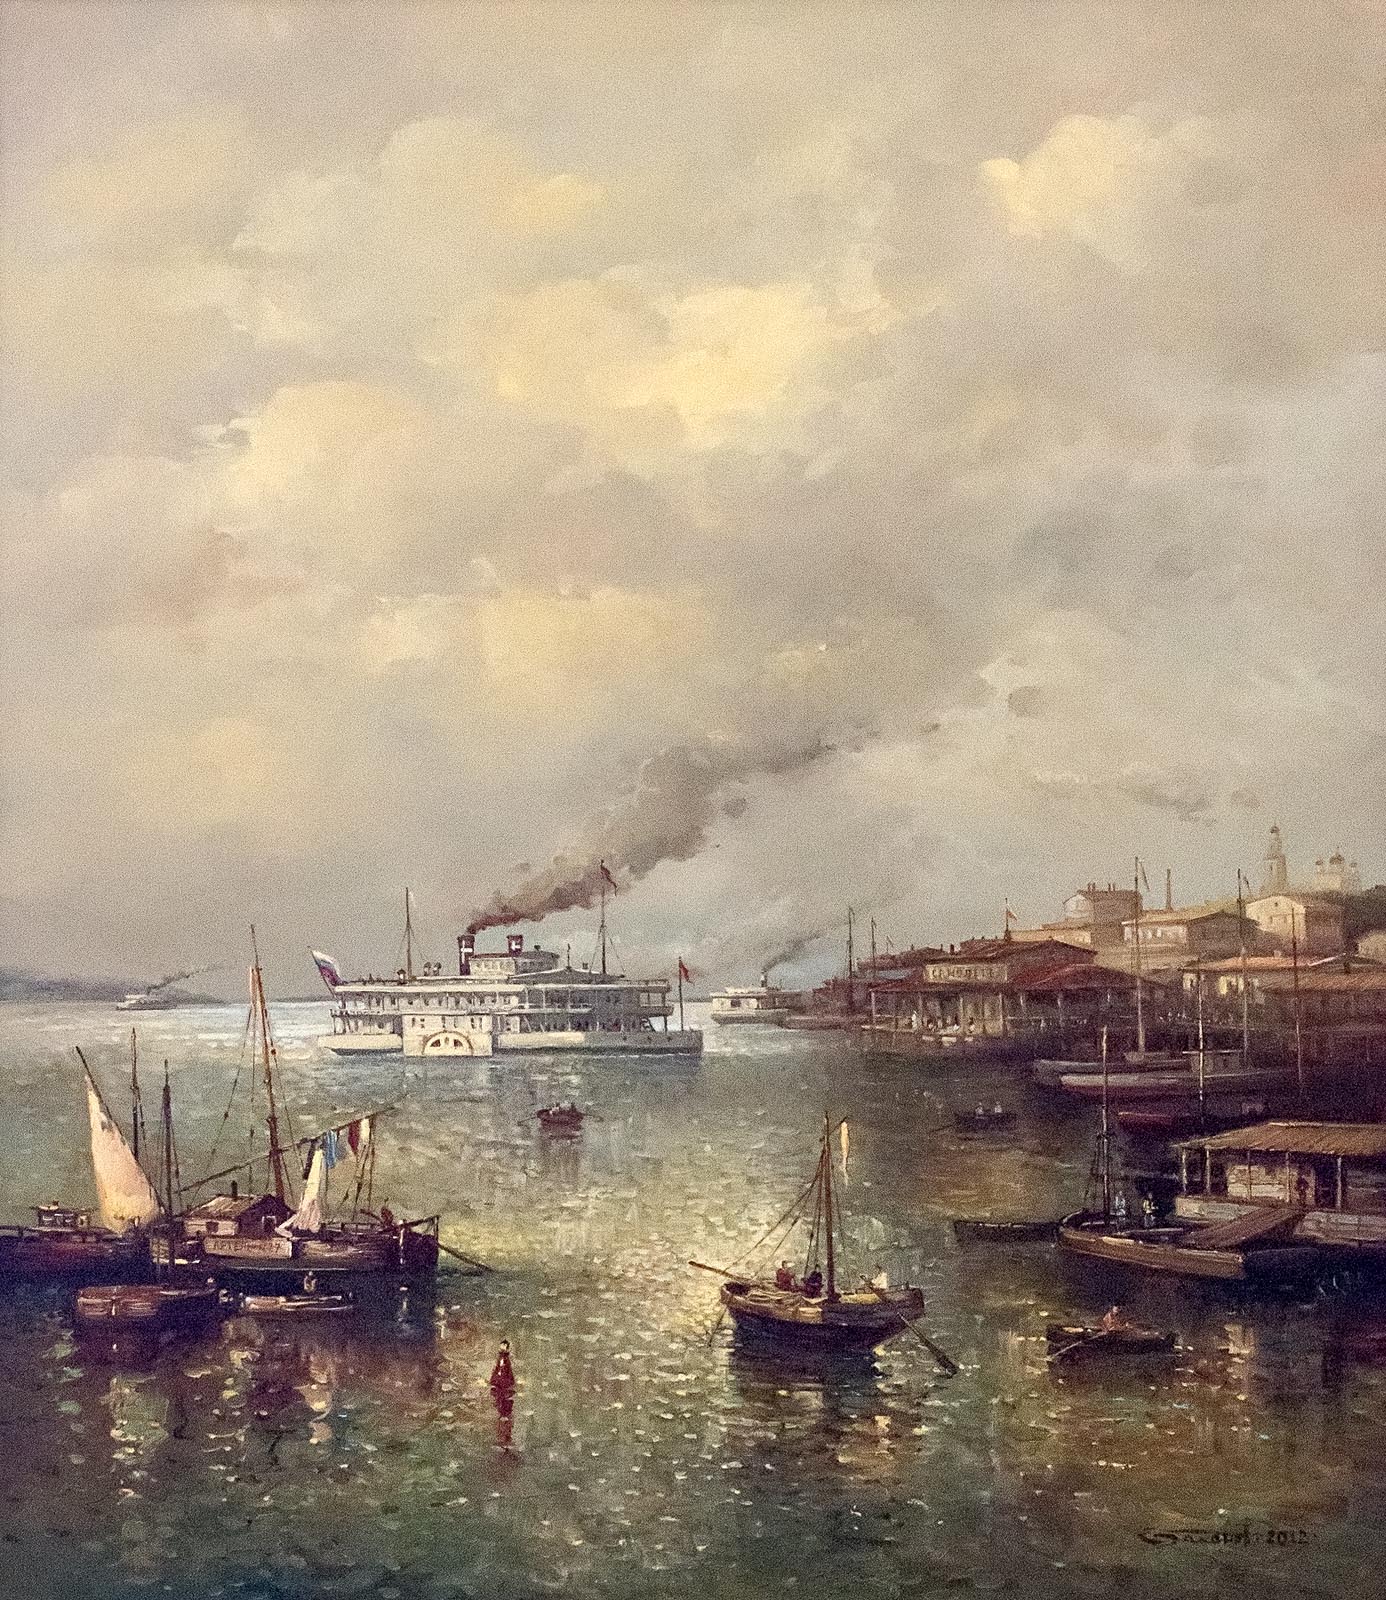 Прибывает пароход. Баканов художник Самара. Пароход Цесаревич 1869.